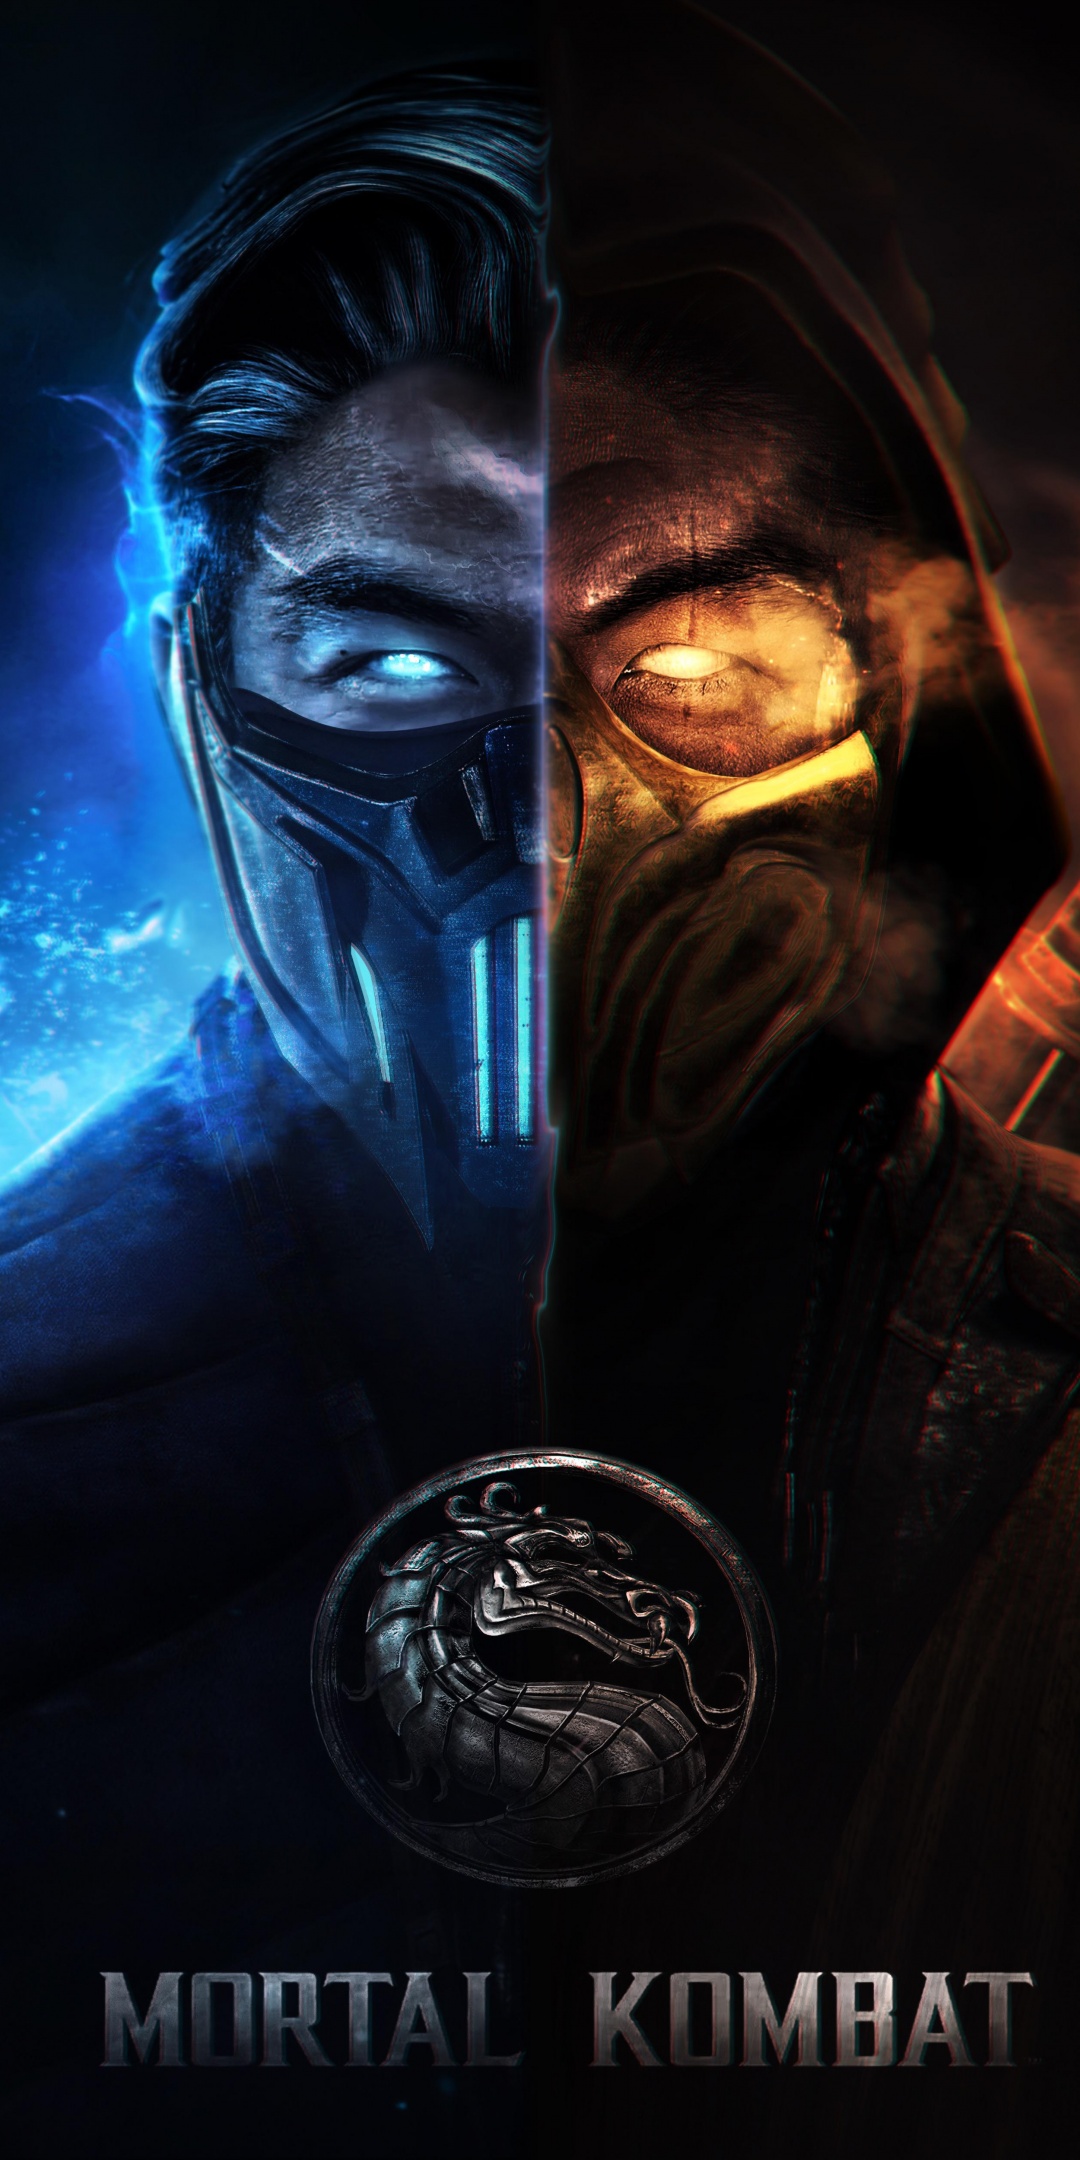 Character from Mortal Kombat Scorpion Wallpaper 4k Ultra HD ID4339